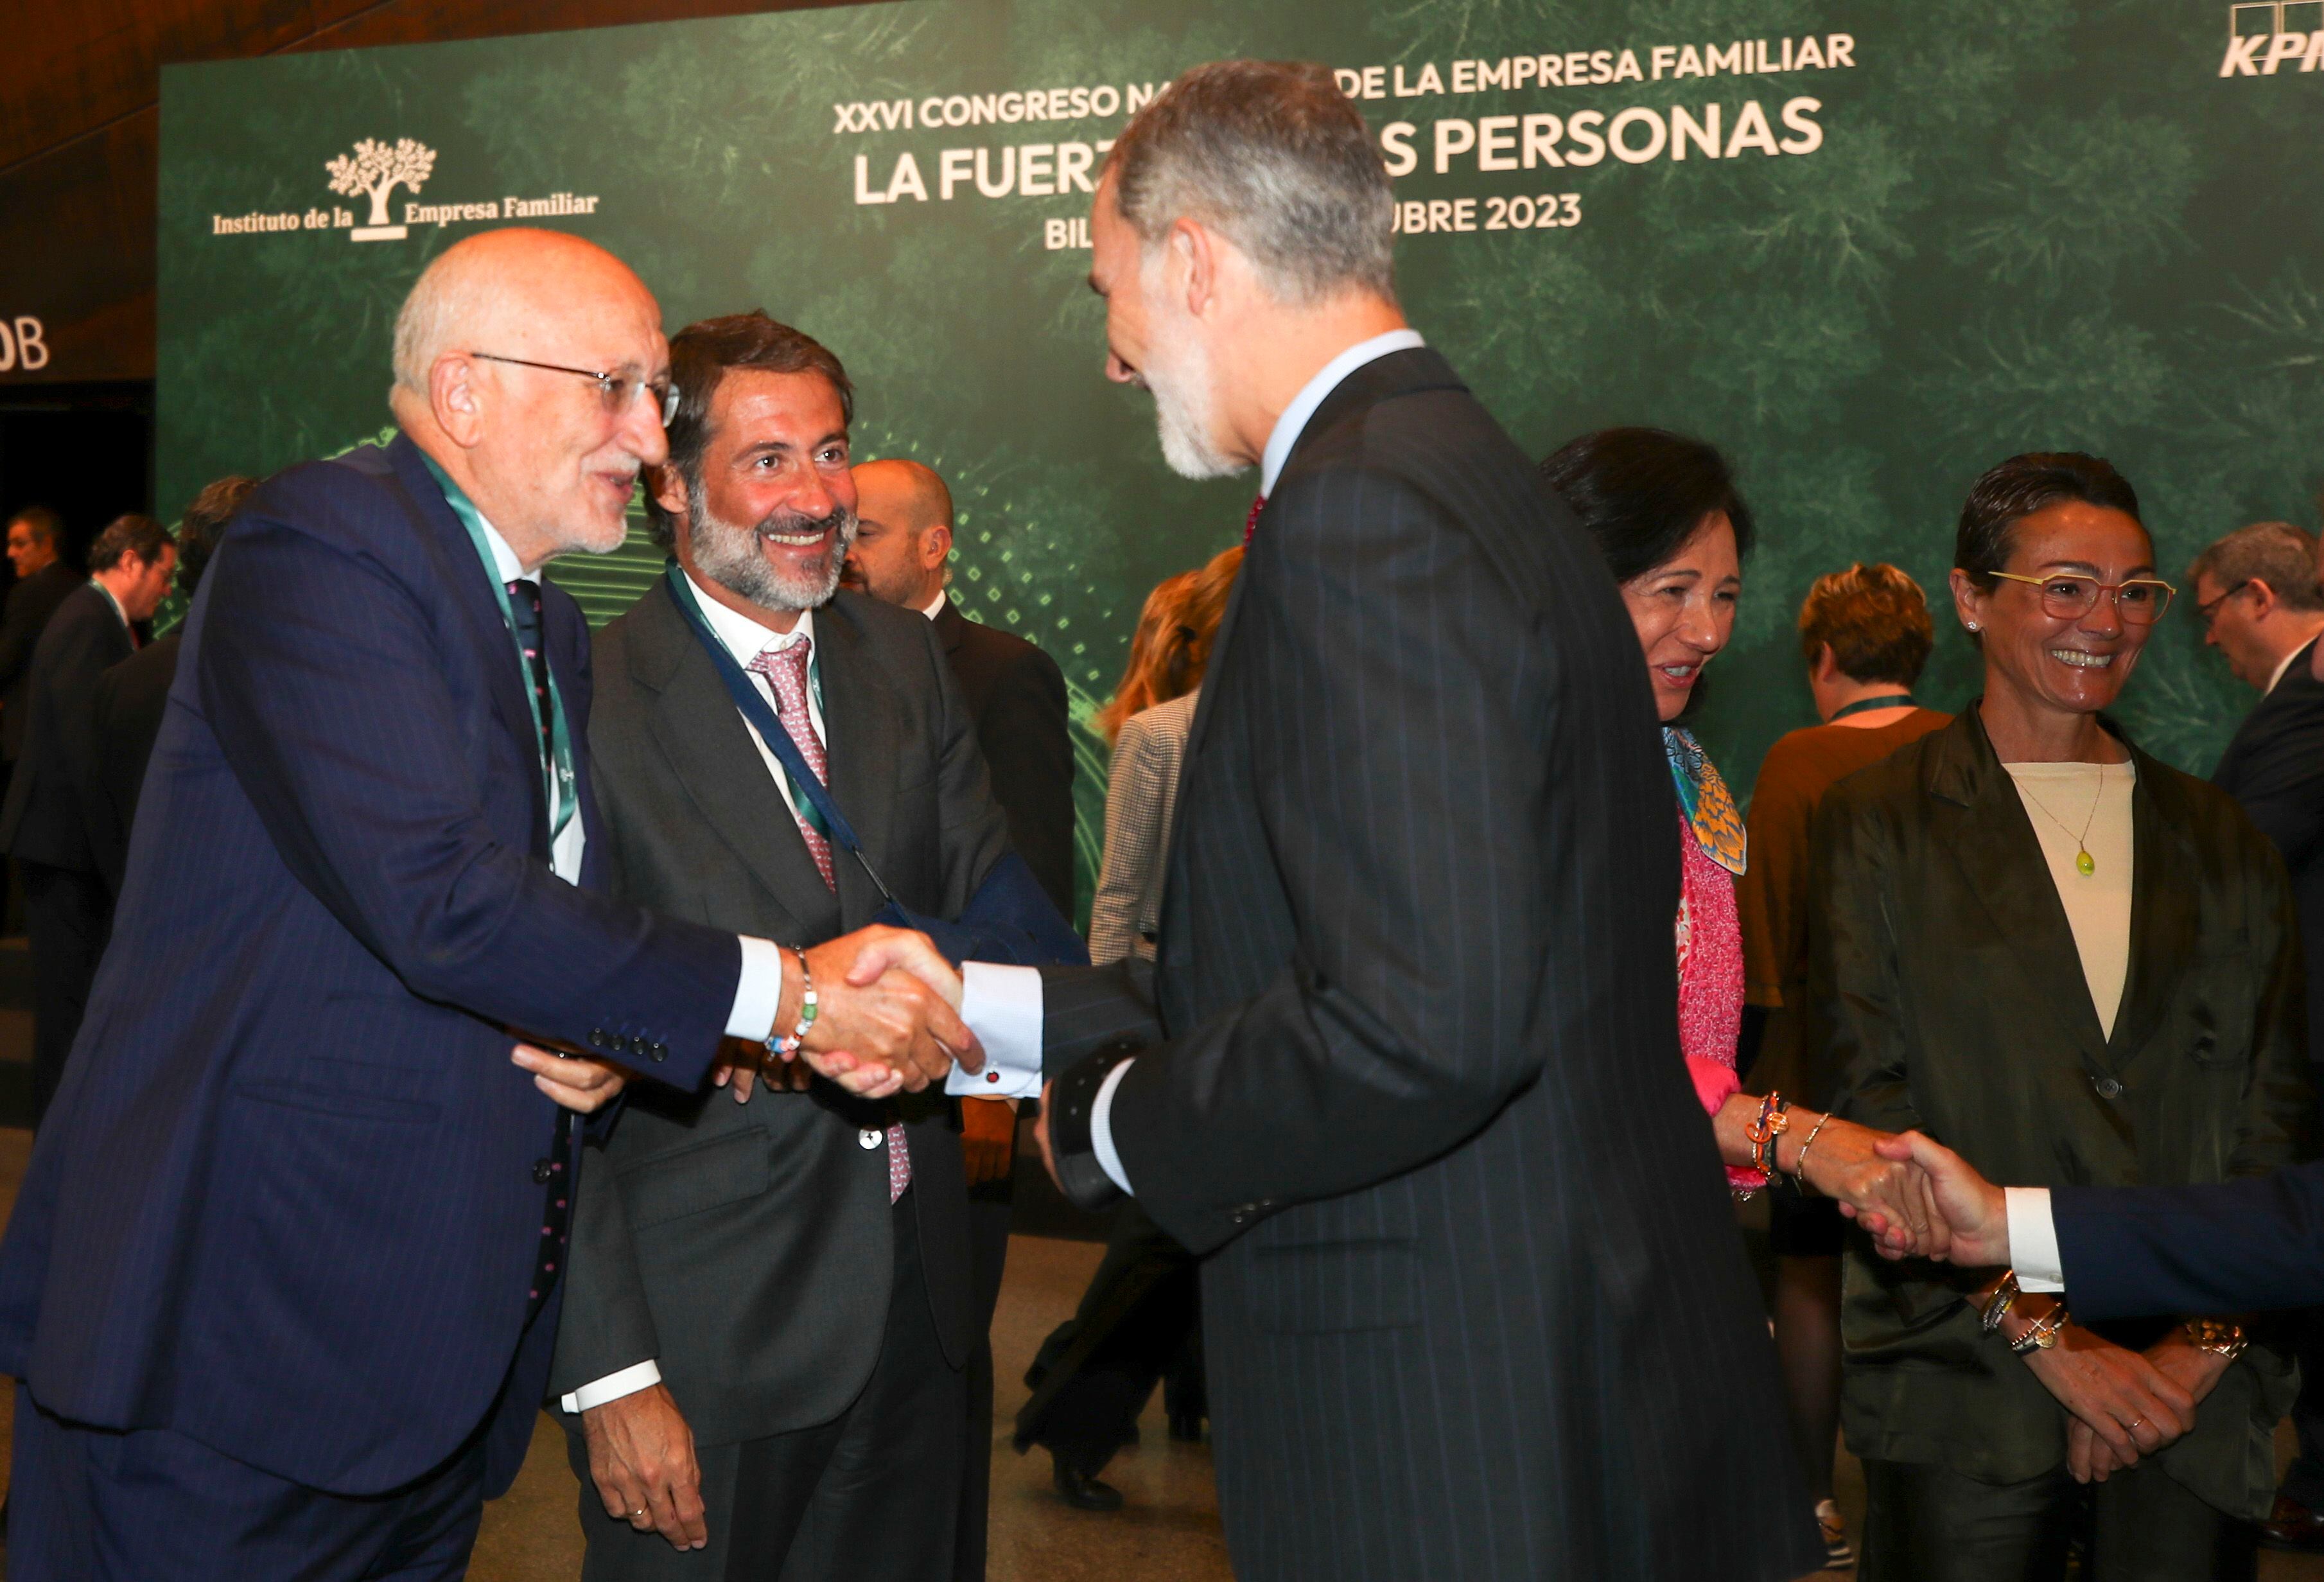 El rey Felipe VI saluda al presidente de Mercadona Juan Roig, en presencia de la presidenta del banco Santander Patricia Botín, en la inauguración del Congreso Nacional de la Empresa Familiar celebrado en Bilbao. 